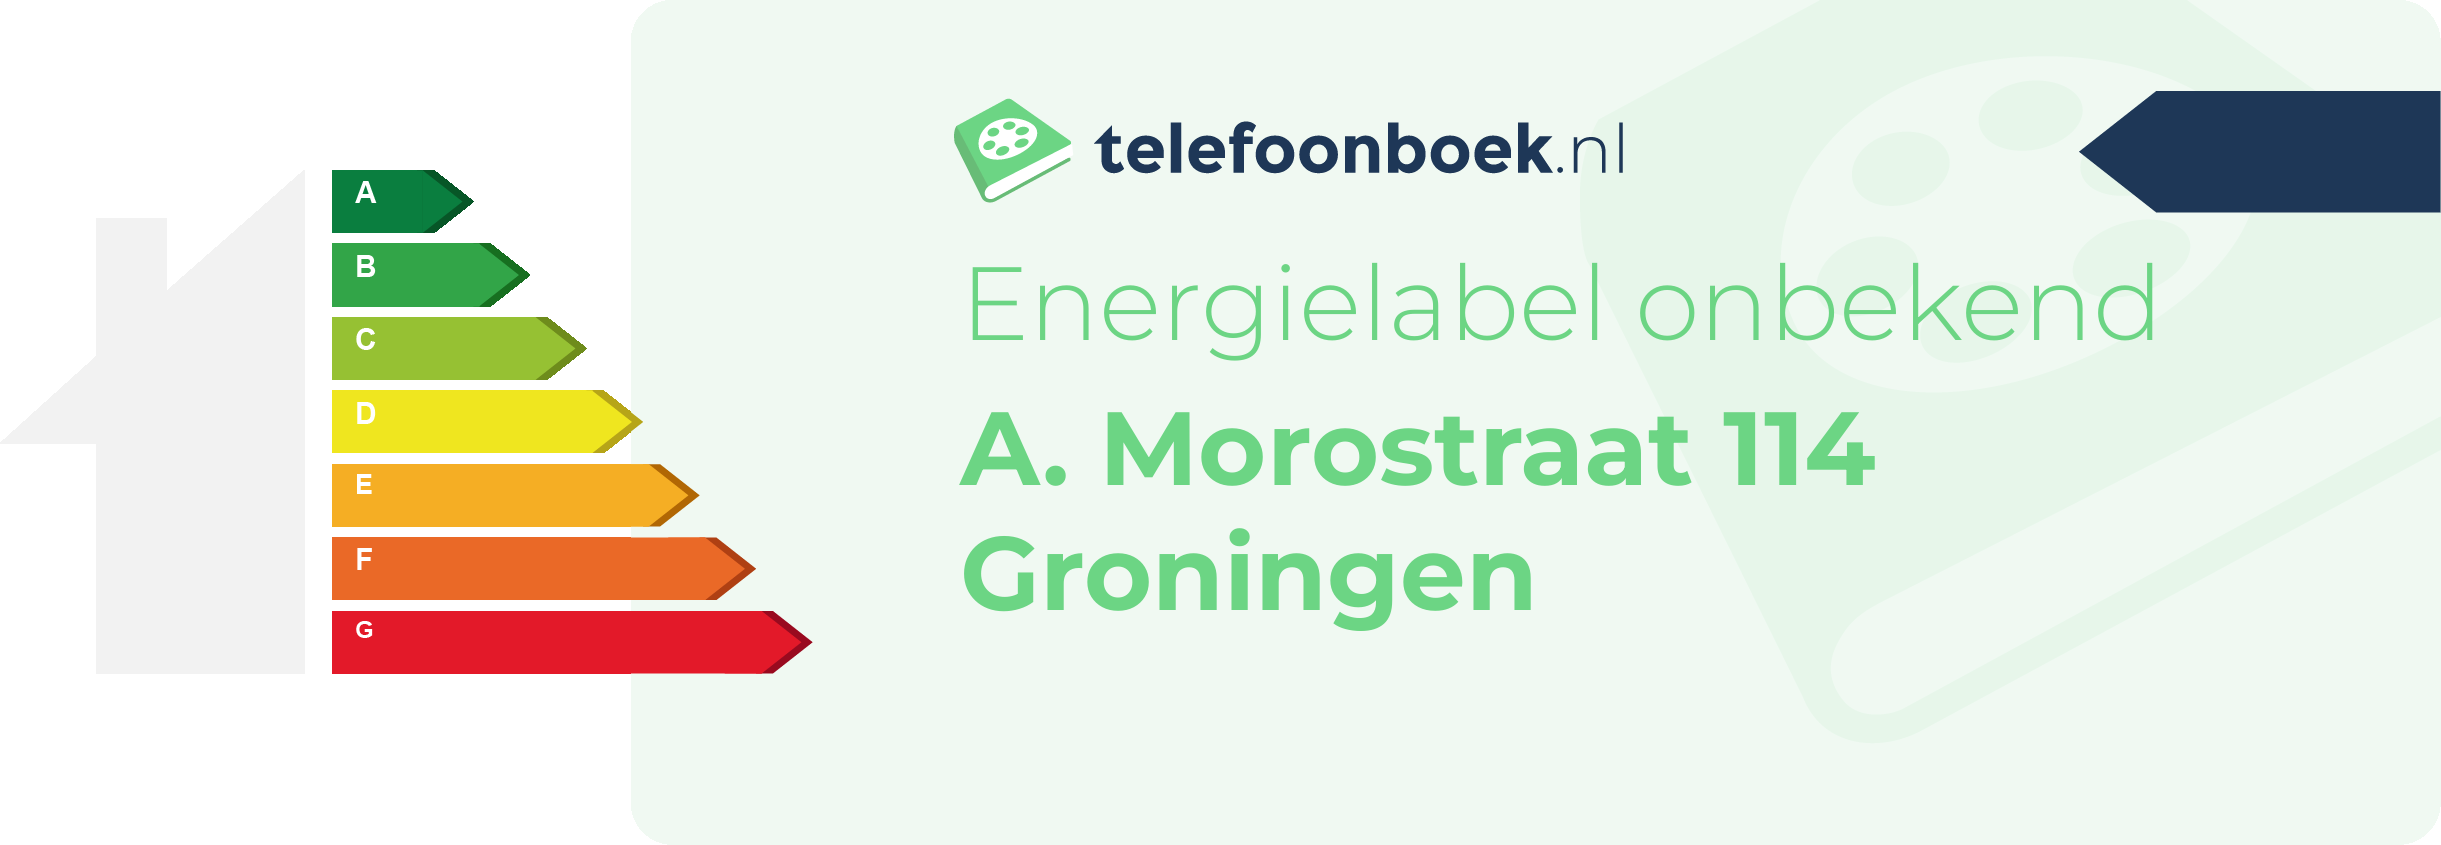 Energielabel A. Morostraat 114 Groningen